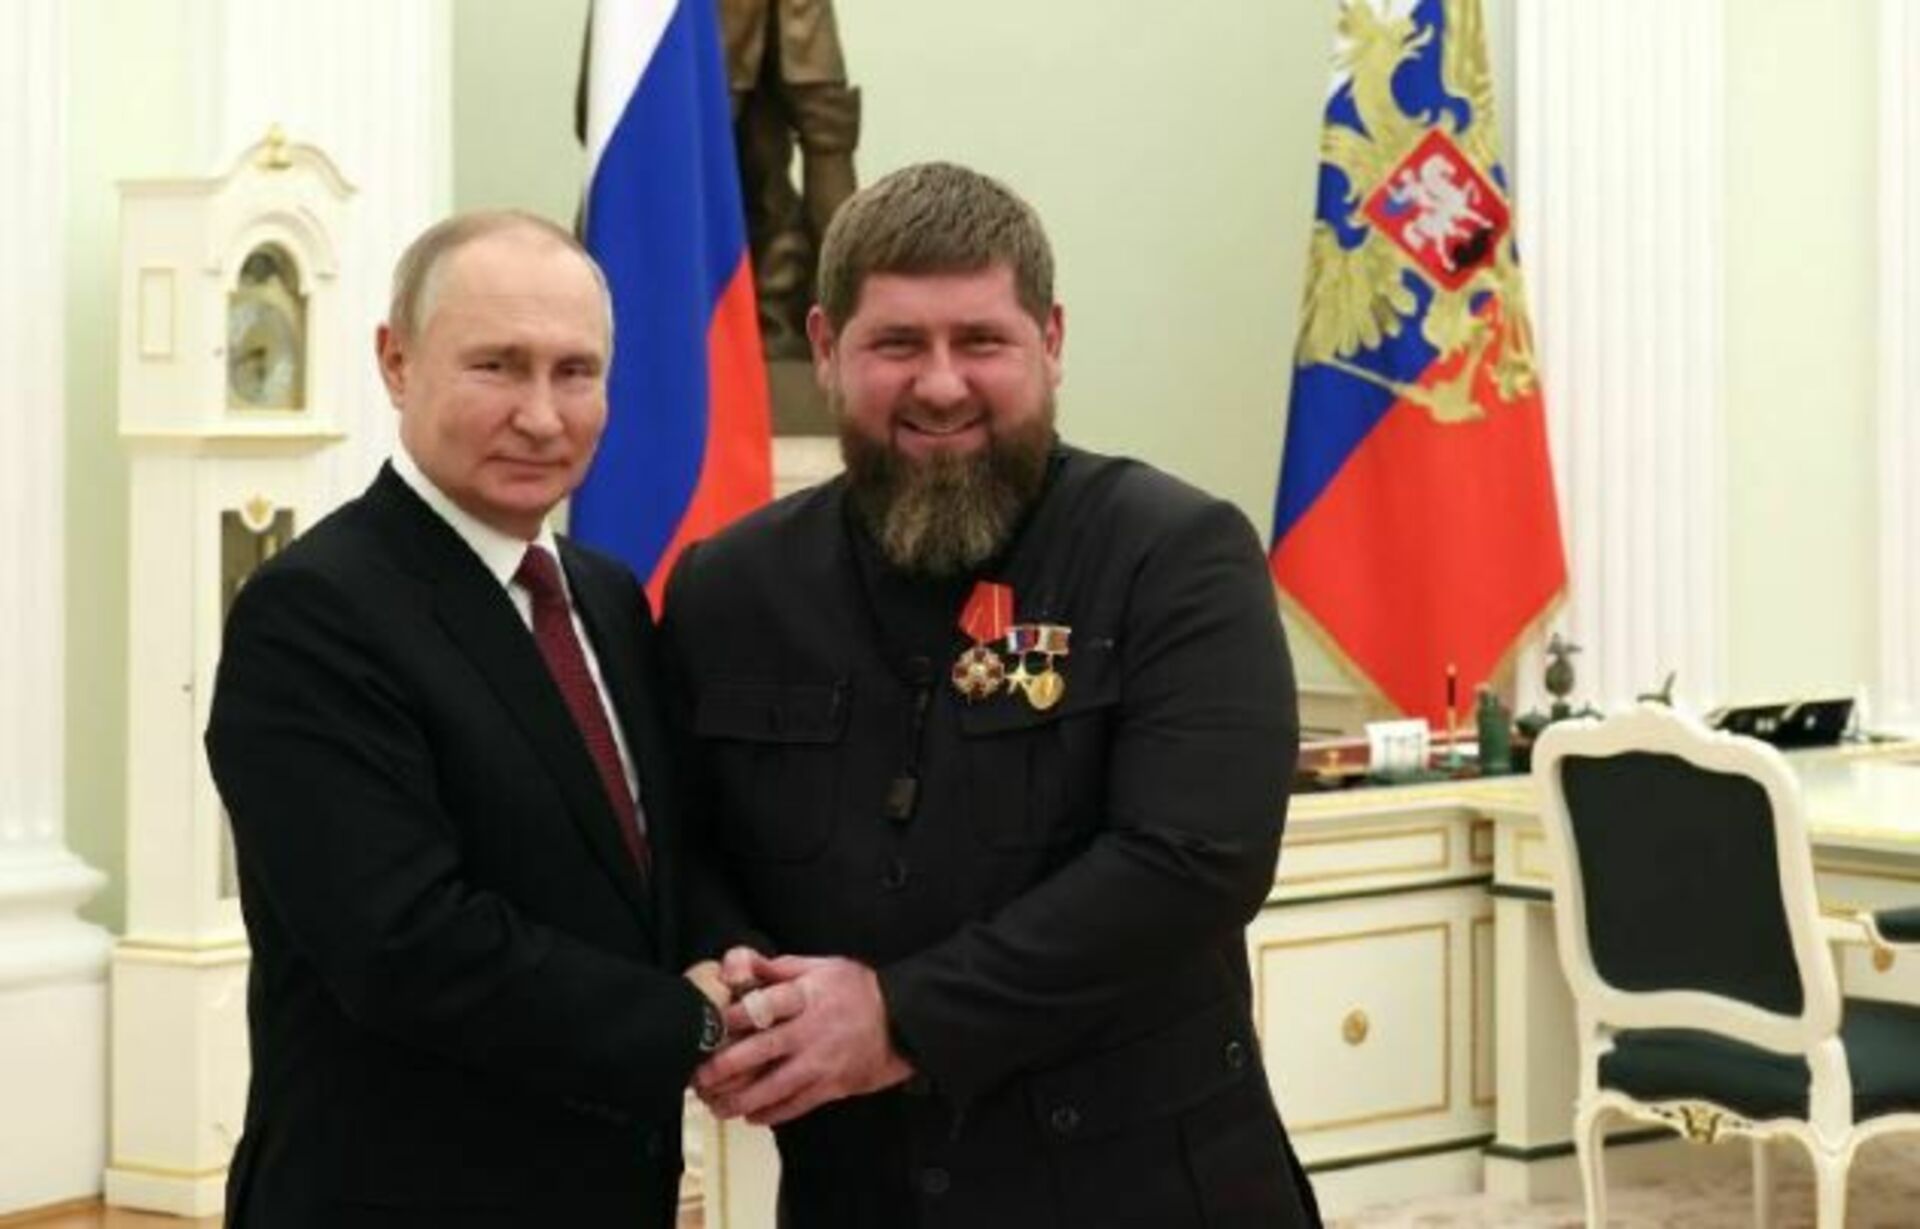 Поздравление кадырову. Кадыров наградил Кадырова орденом Кадырова.